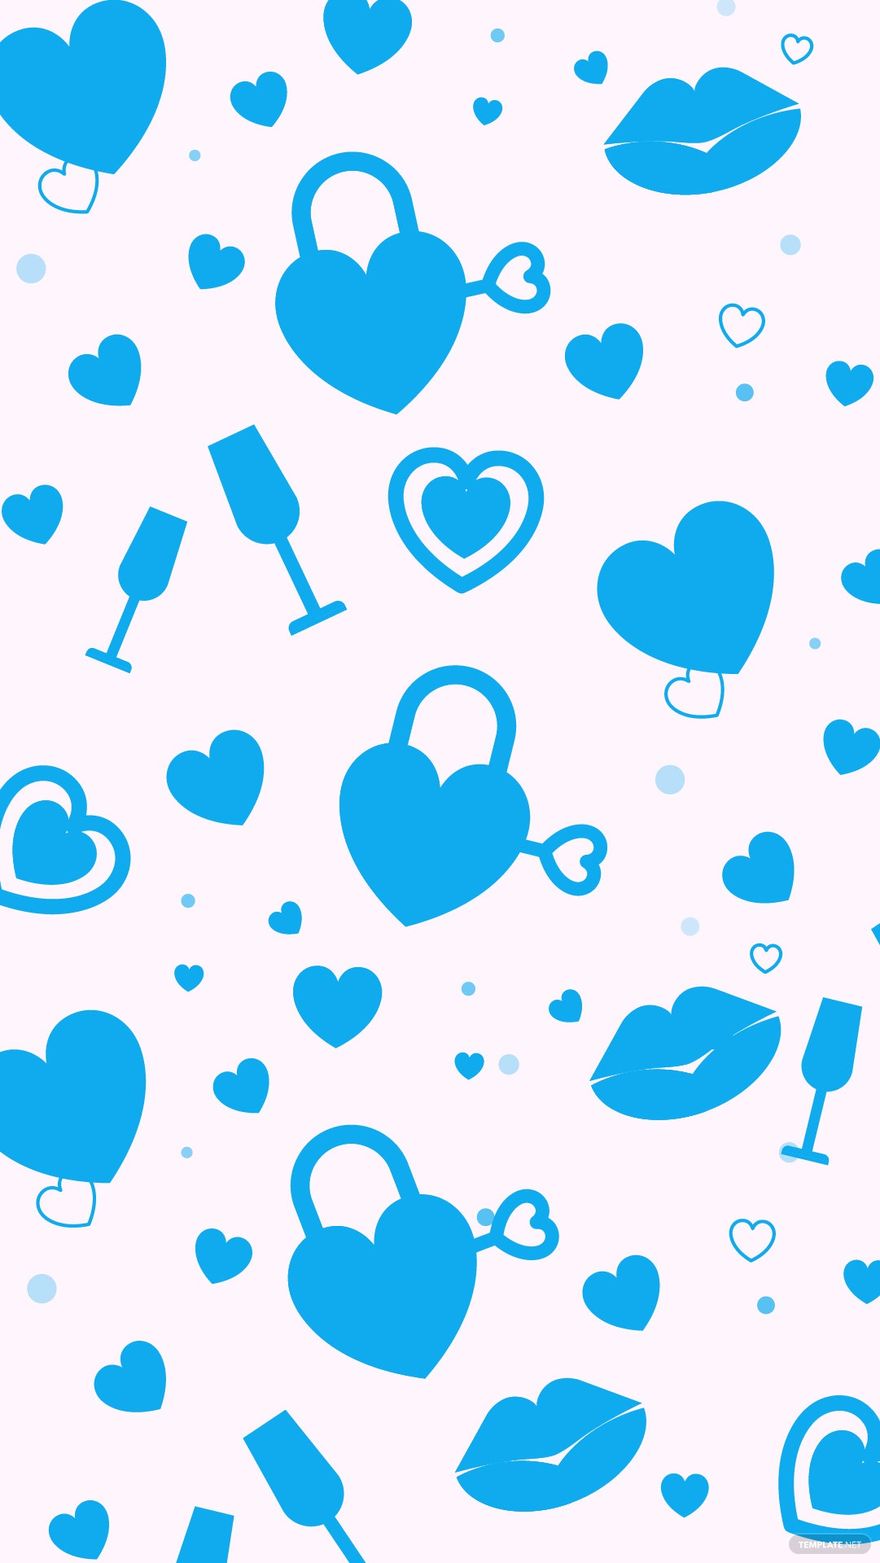 Free Baby Blue Heart Background - EPS, Illustrator, JPG, SVG ...